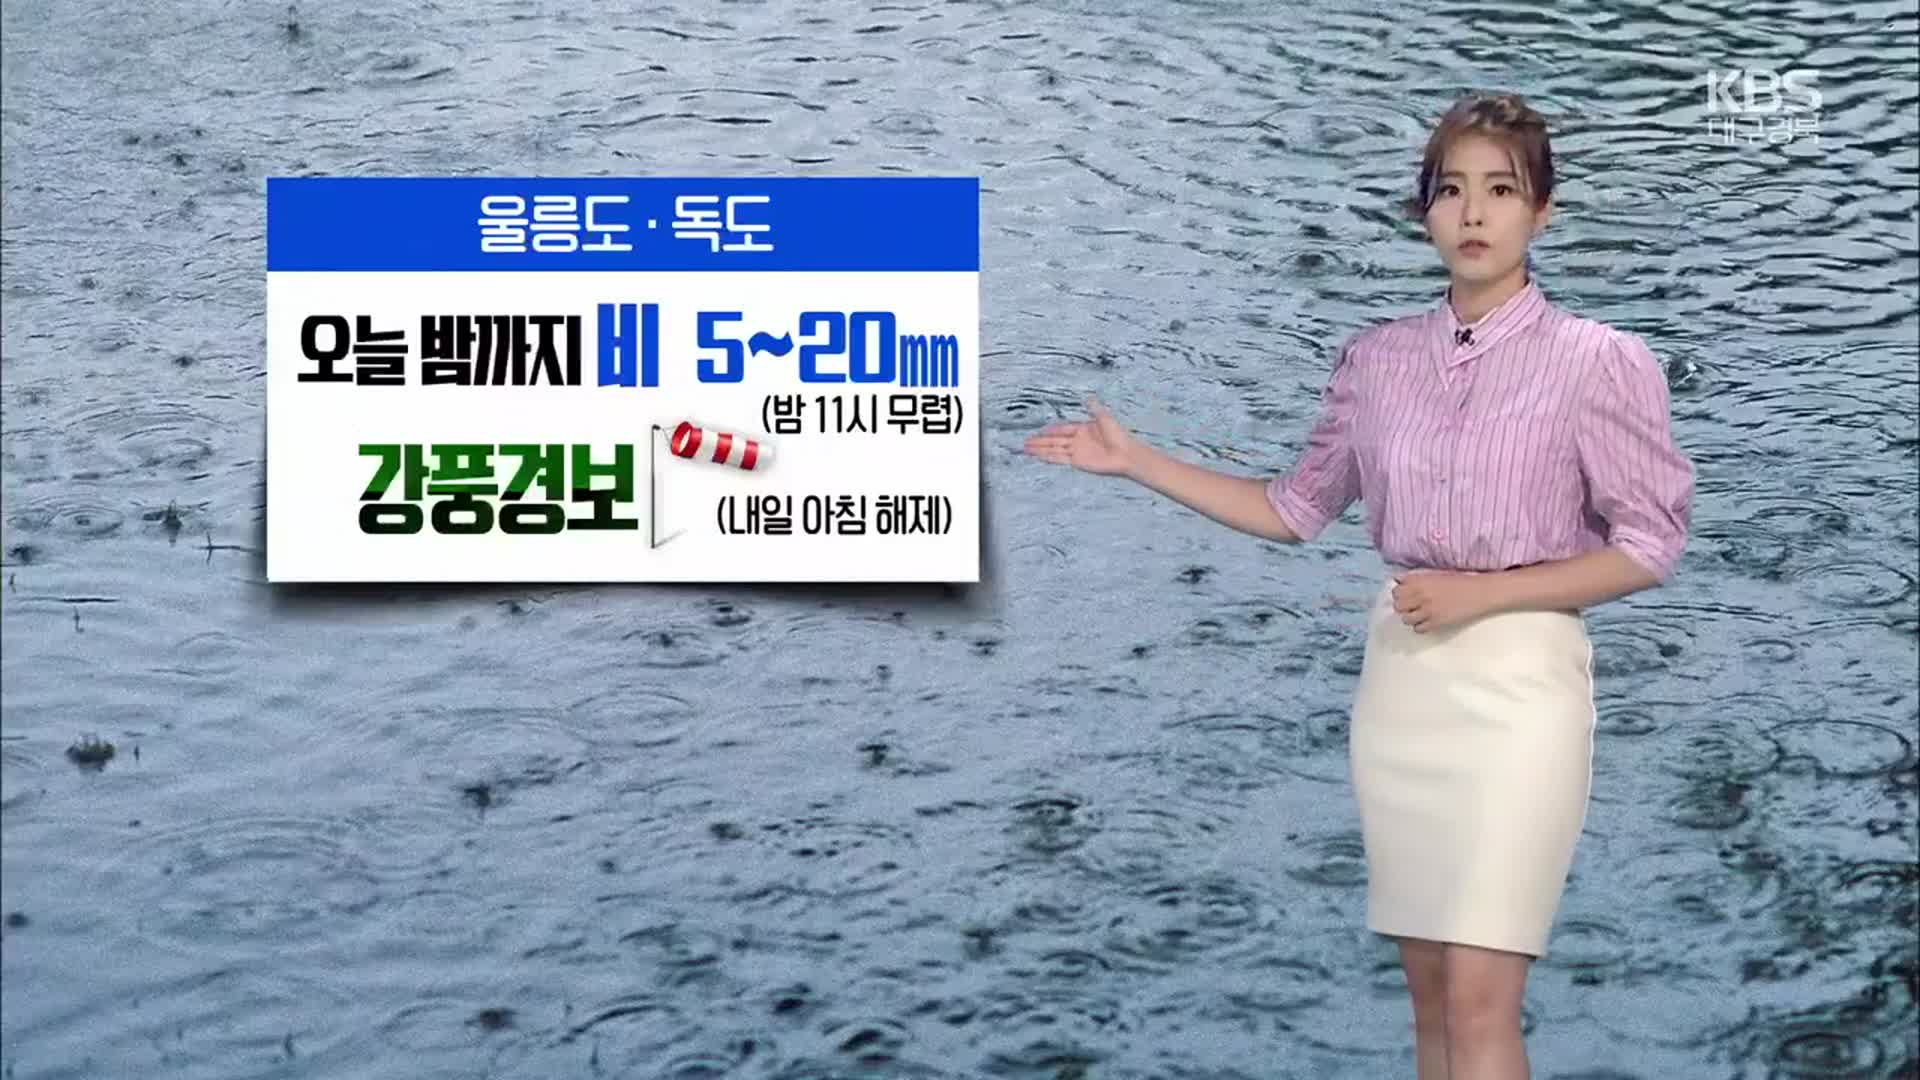 [날씨] 대구·경북 내일 소나기 5~70mm…한낮 30도 안팎